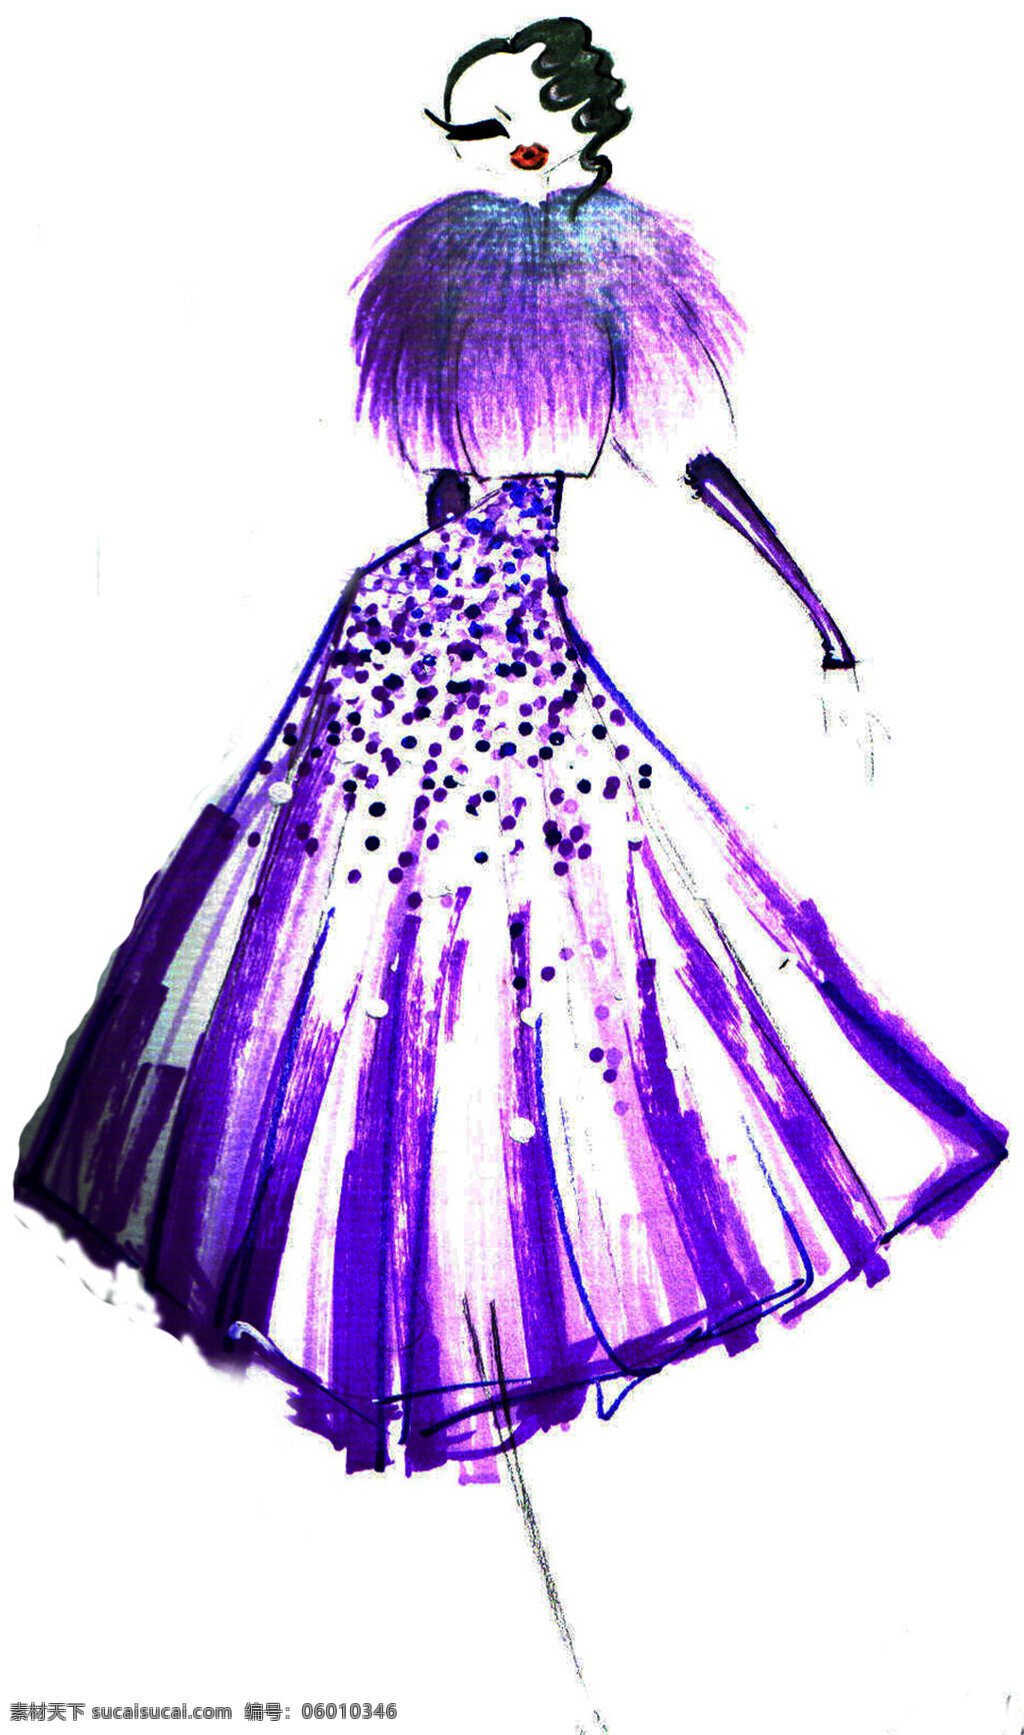 紫色 晚礼服 设计图 服装设计 时尚女装 职业女装 职业装 女装设计 效果图 短裙 衬衫 服装 服装效果图